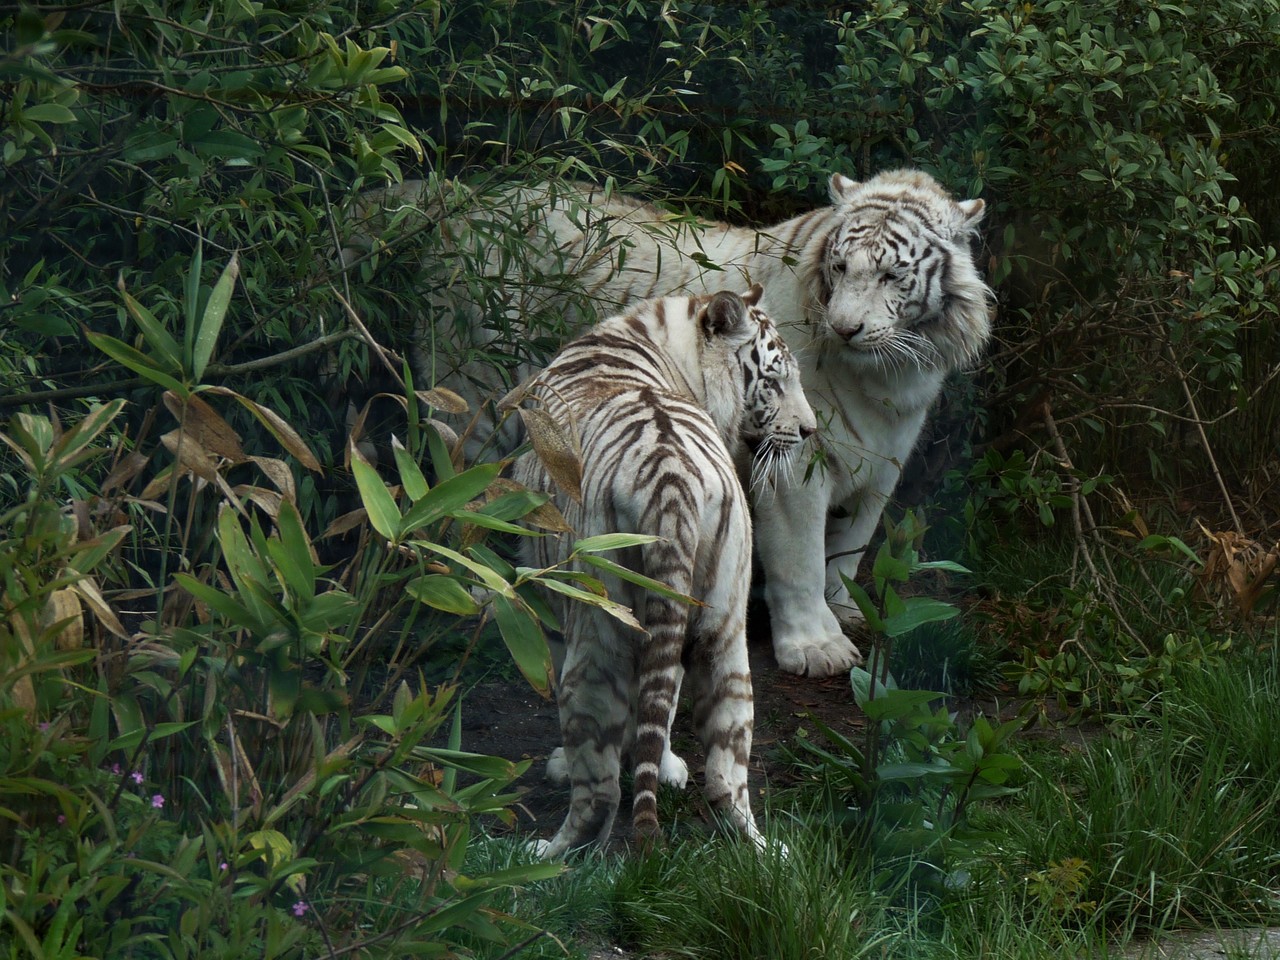 White tigers Panthera tigris